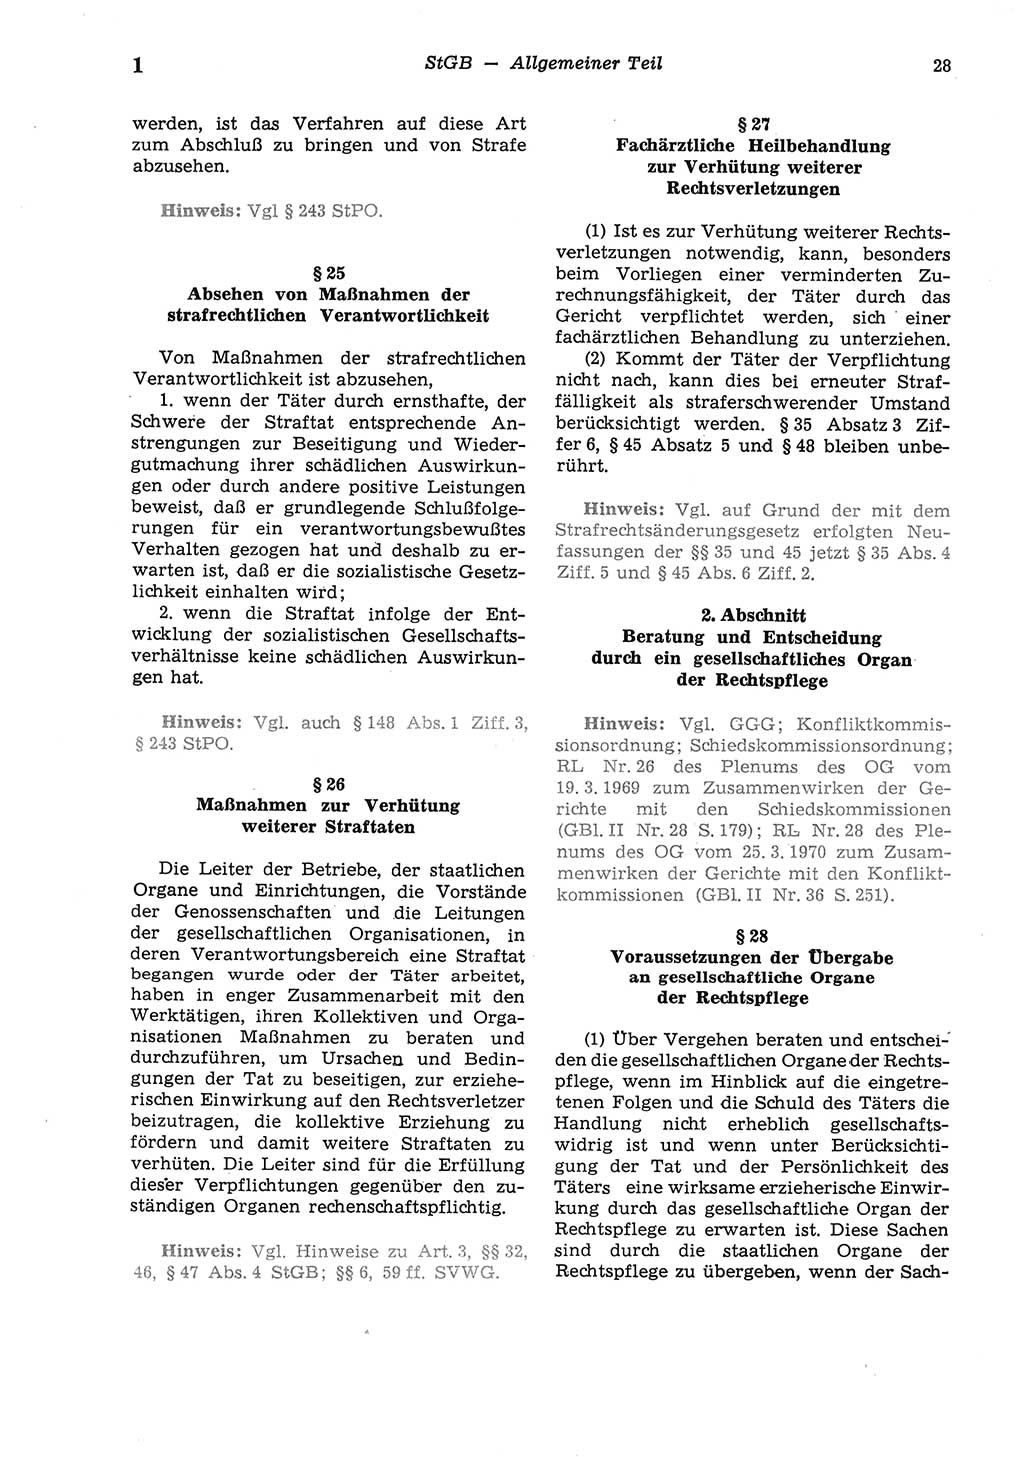 Strafgesetzbuch (StGB) der Deutschen Demokratischen Republik (DDR) und angrenzende Gesetze und Bestimmungen 1975, Seite 28 (StGB DDR Ges. Best. 1975, S. 28)